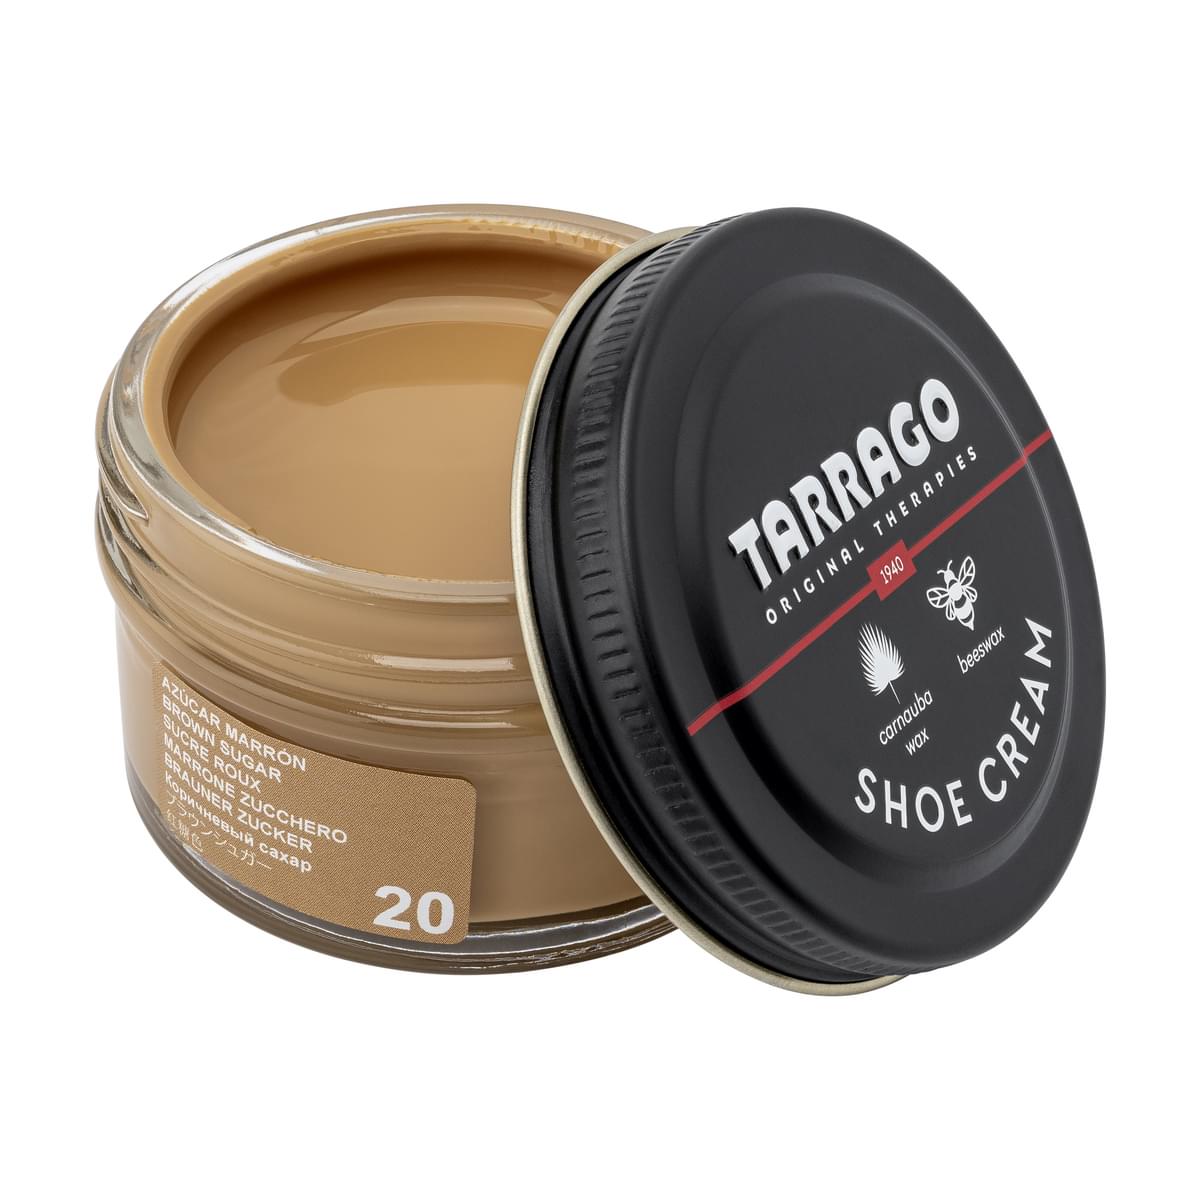 Tarrago Shoe Cream  - Brown Sugar - 20